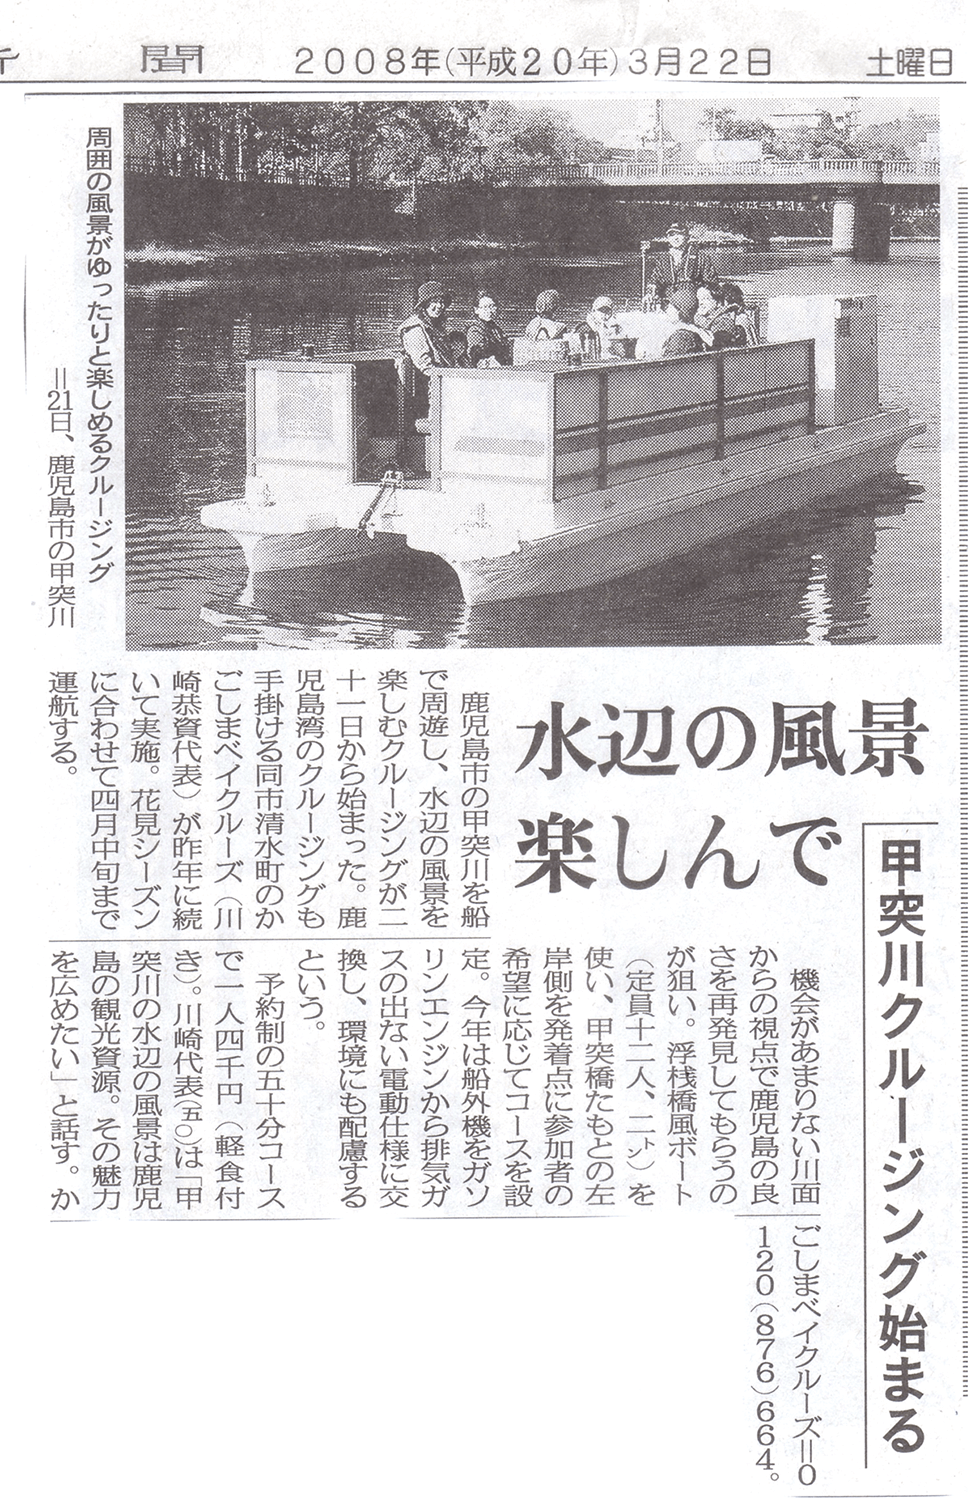 2008/3/22　南日本新聞掲載